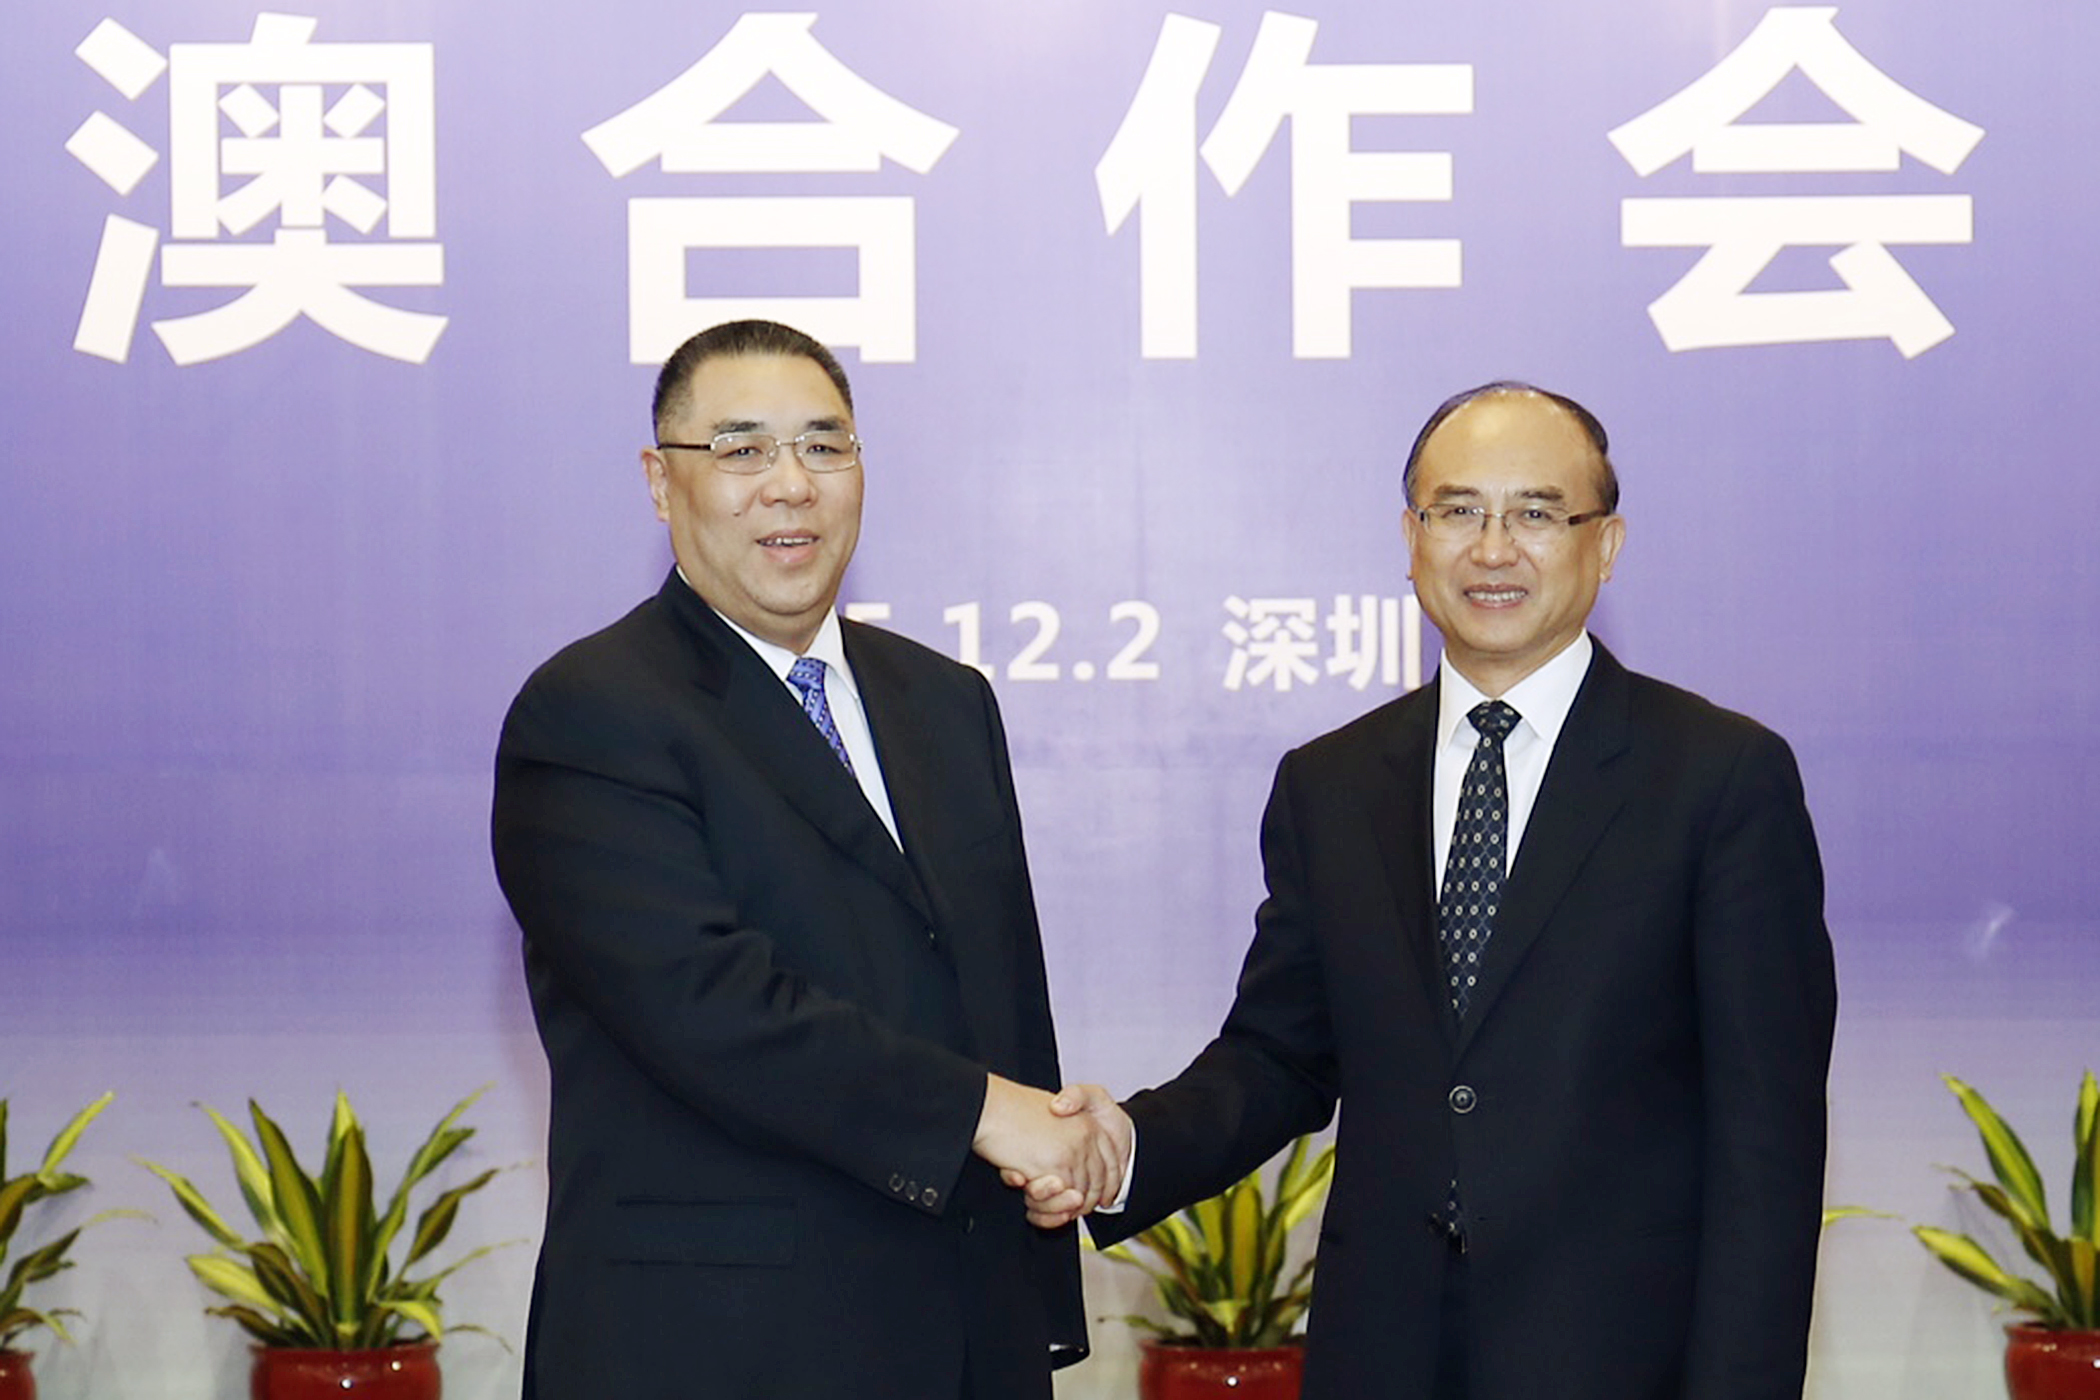 Cooperação Macau-Shenzhen “elevada e produtiva”